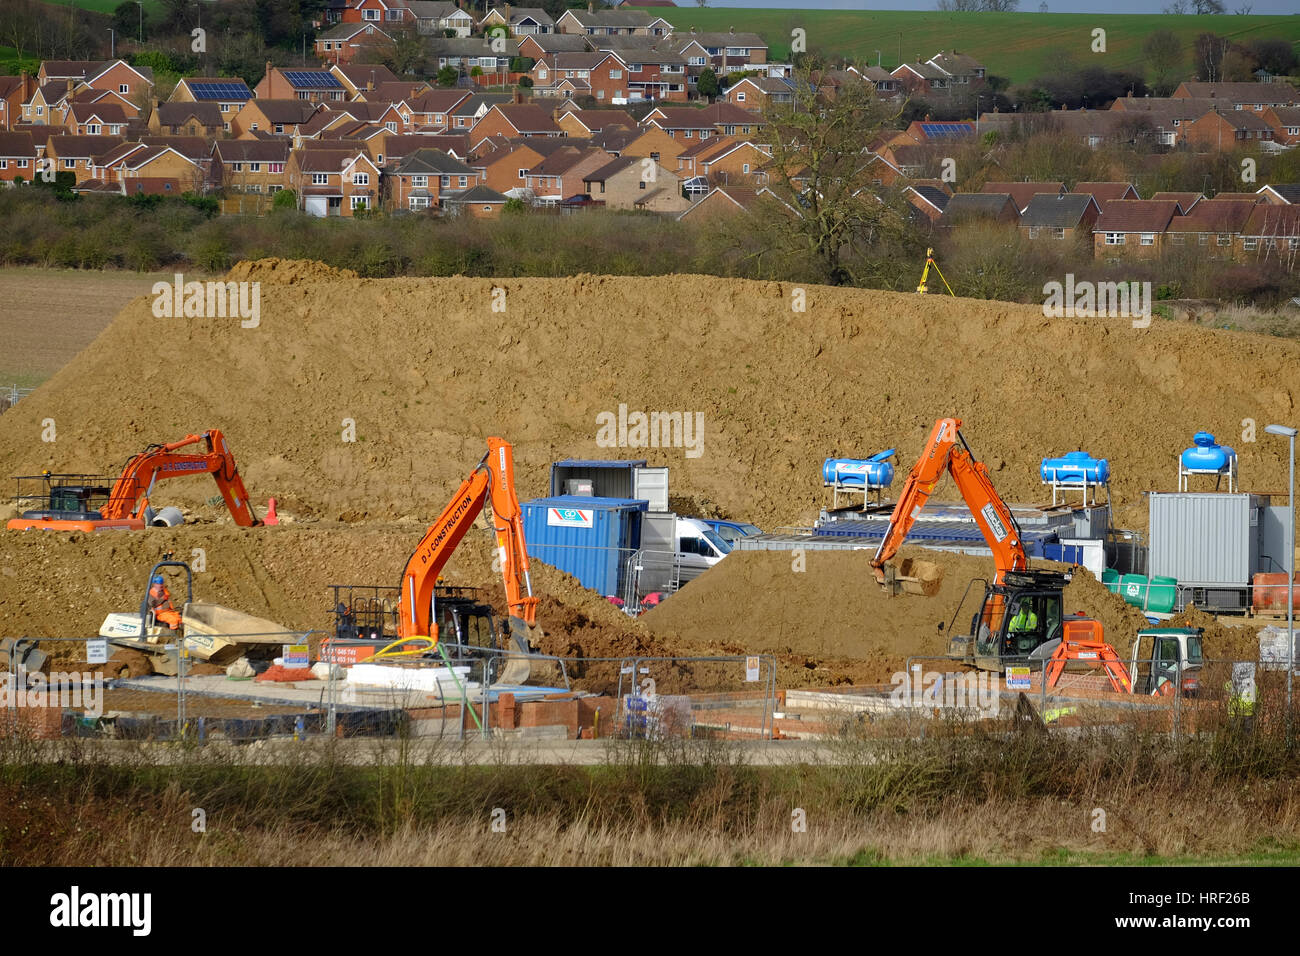 La préparation des terres pour le développement de nouveaux logements, England, UK Banque D'Images